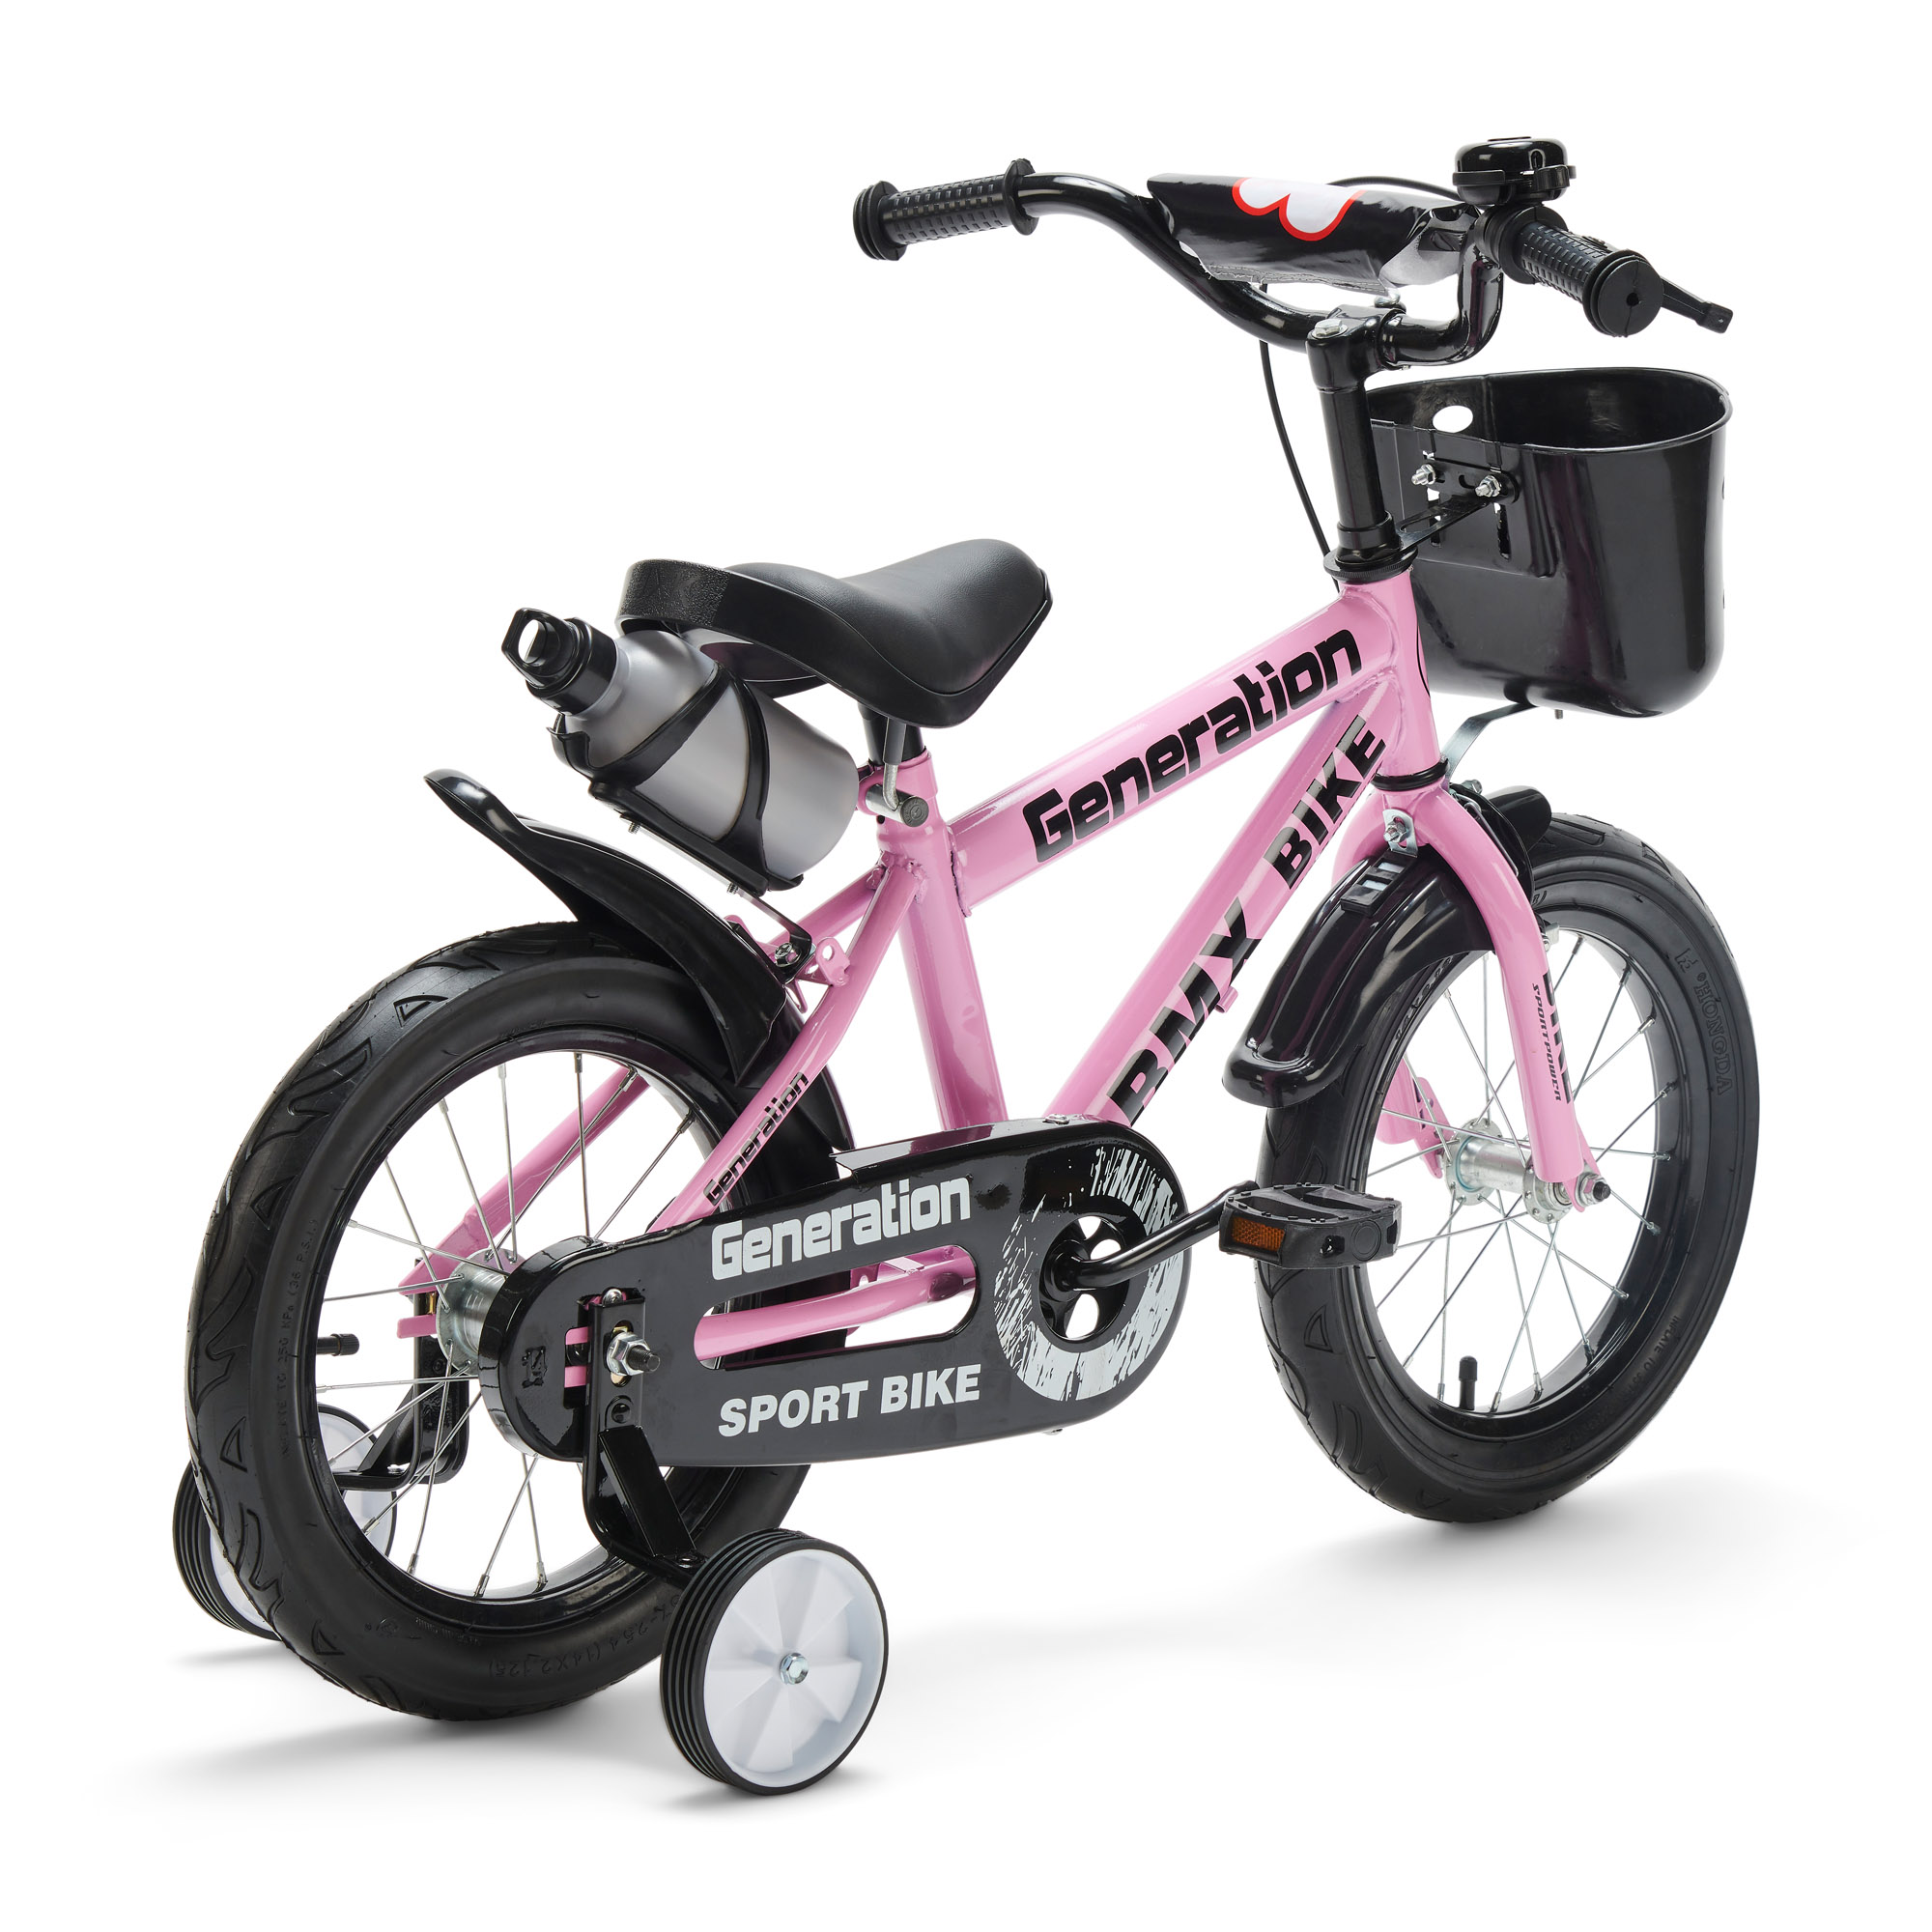 Paard Decoratie Pijnboom Generation BMX fiets 14″ Roze - Goedkope Fietsjes